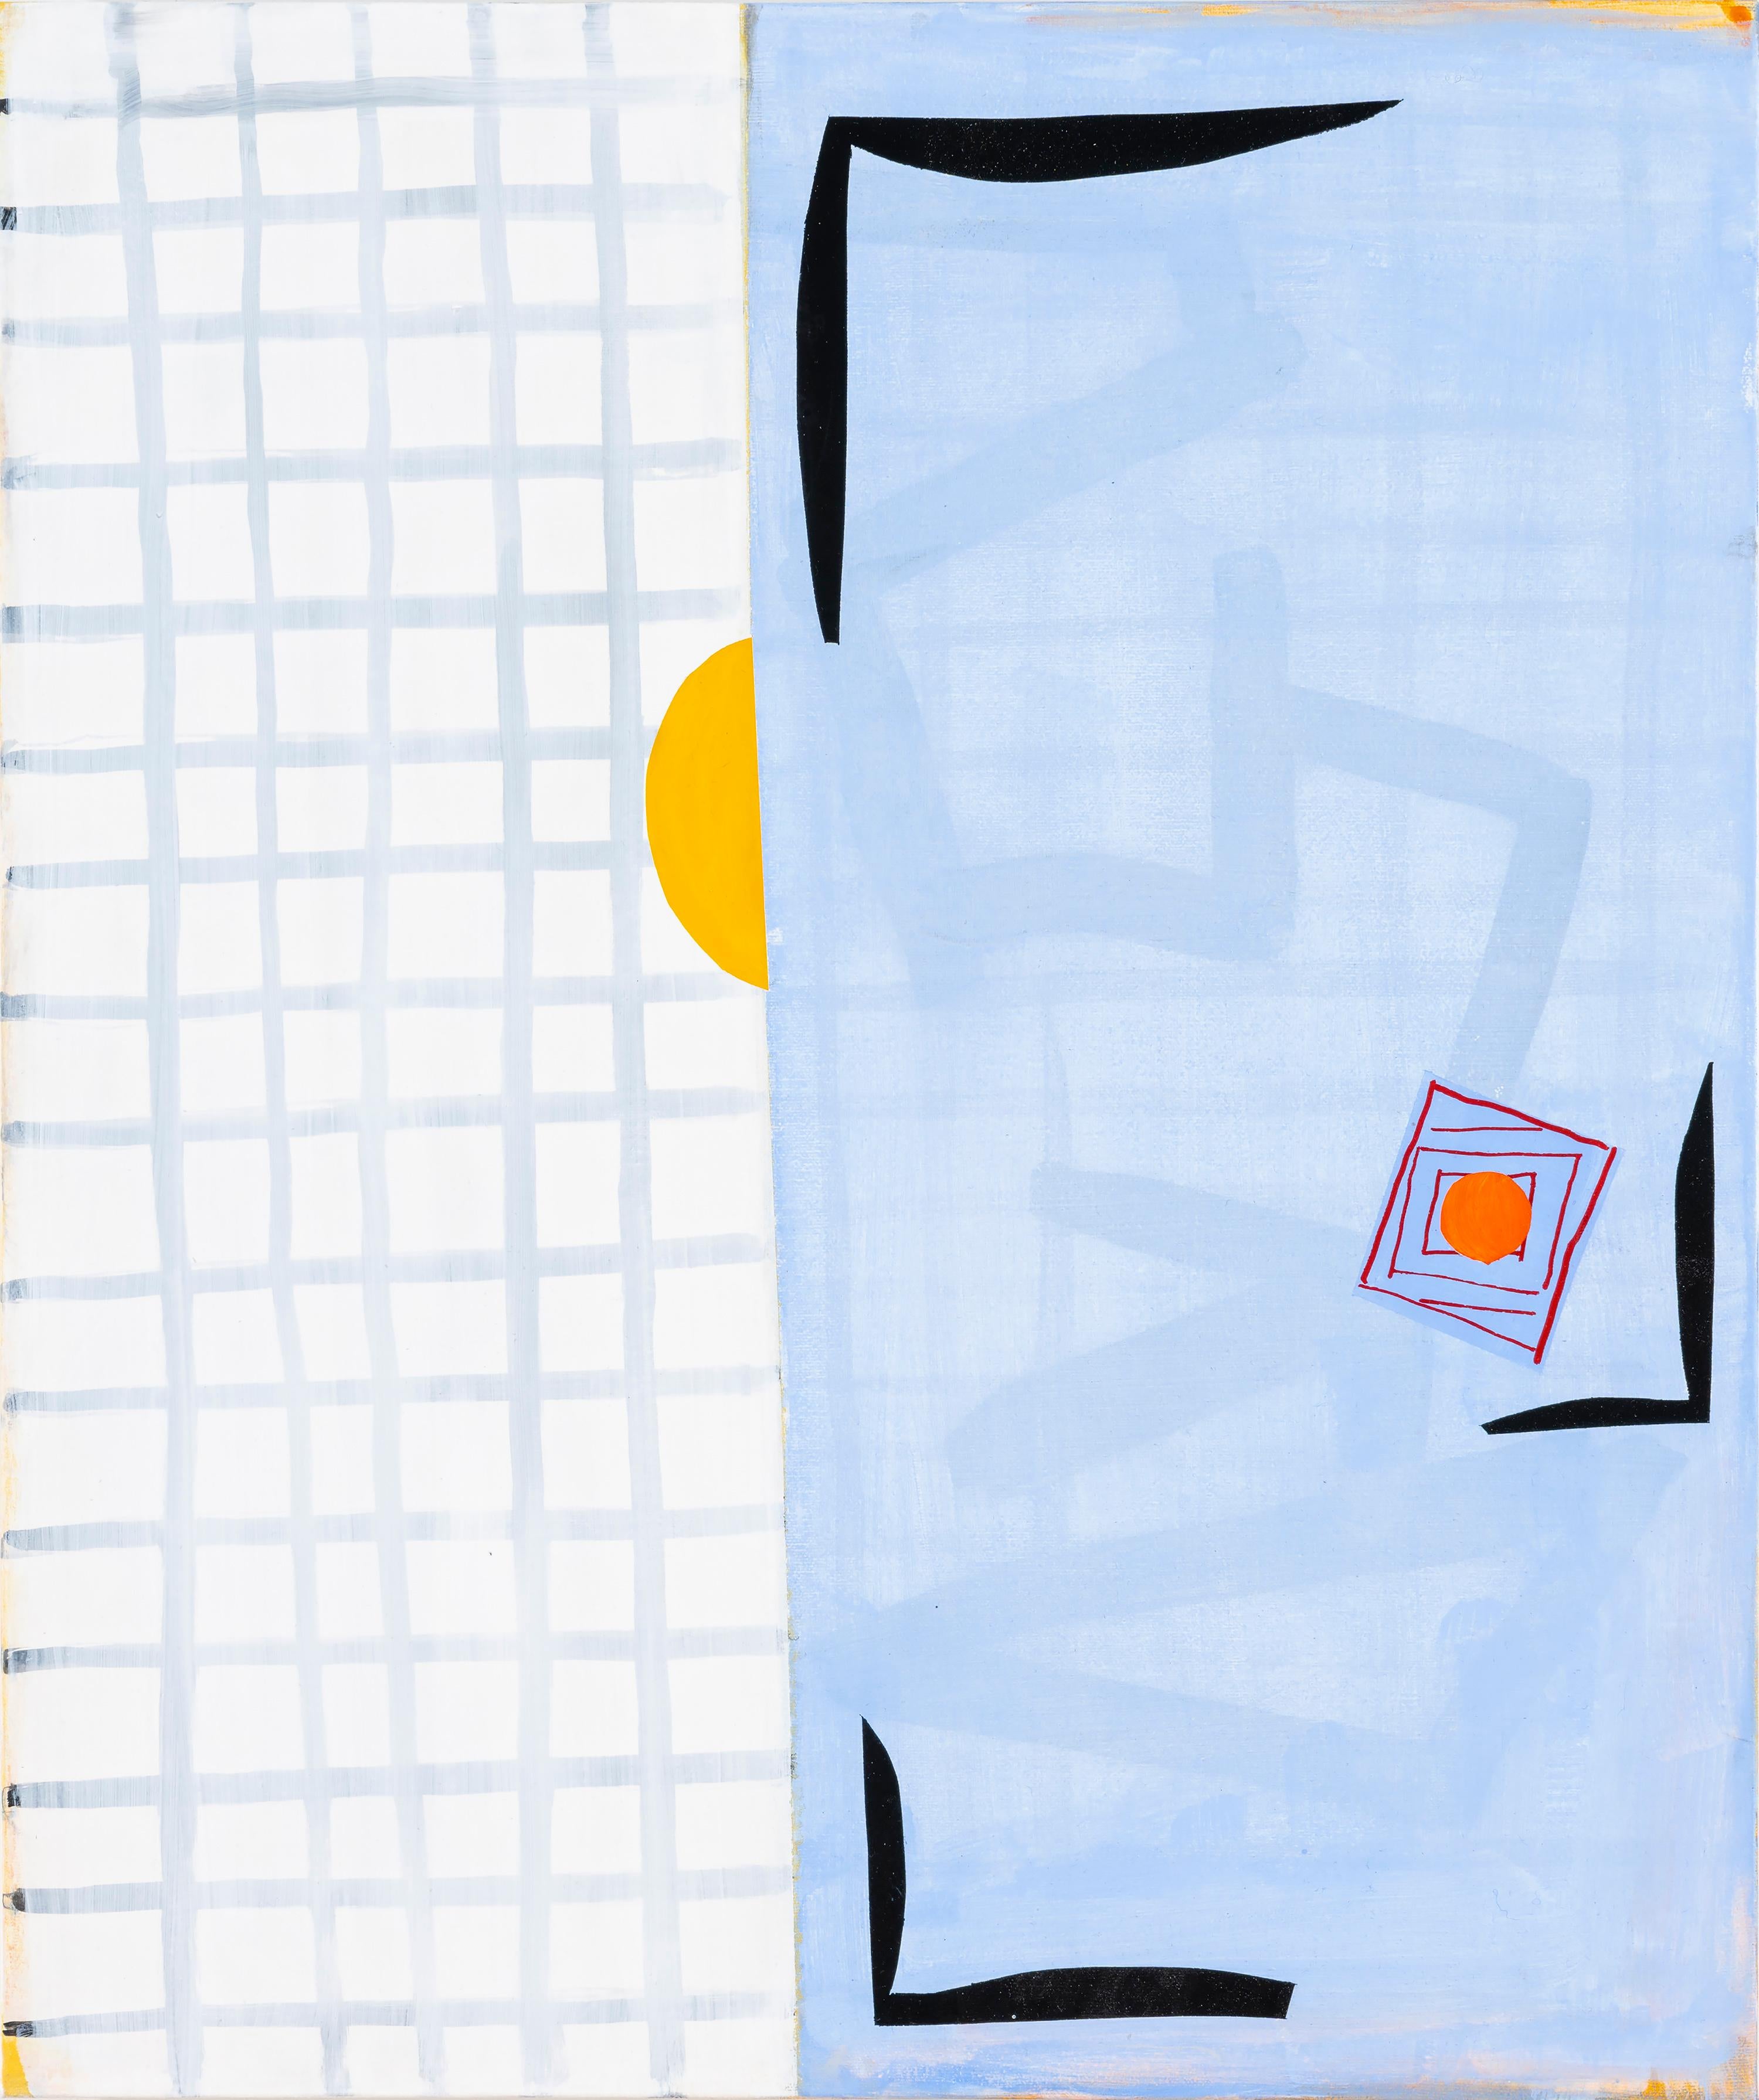 Abstract Painting Margo Margolis - "La nuit dans le jour" Abstrait ludique Matisse Calder Qualité Bleu Jaune Noir Blanc